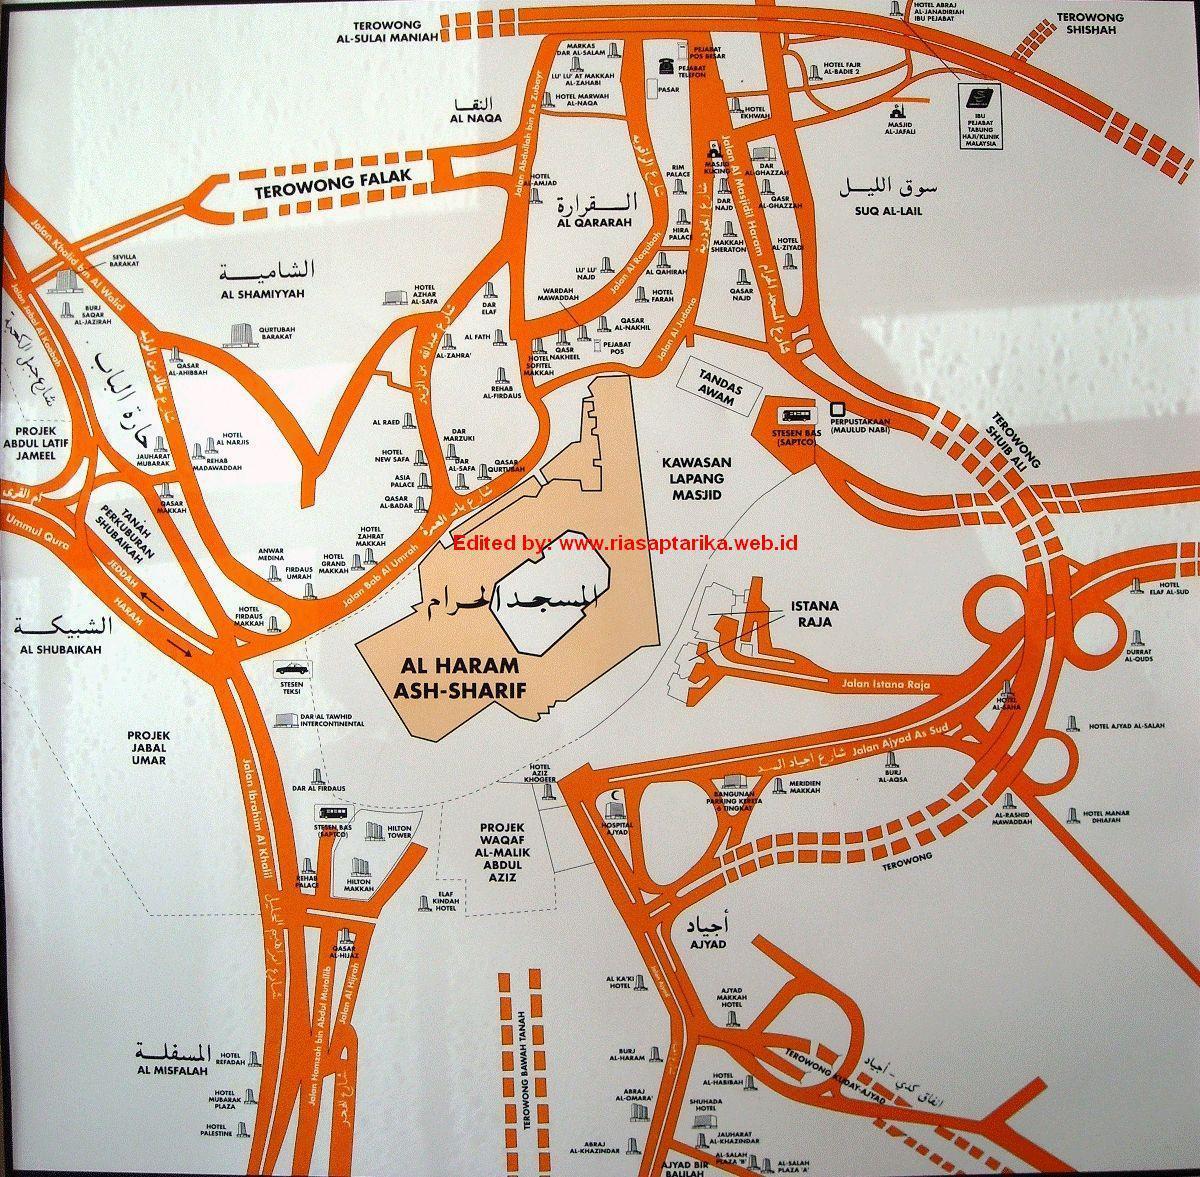 mapa de misfalah Meca mapa